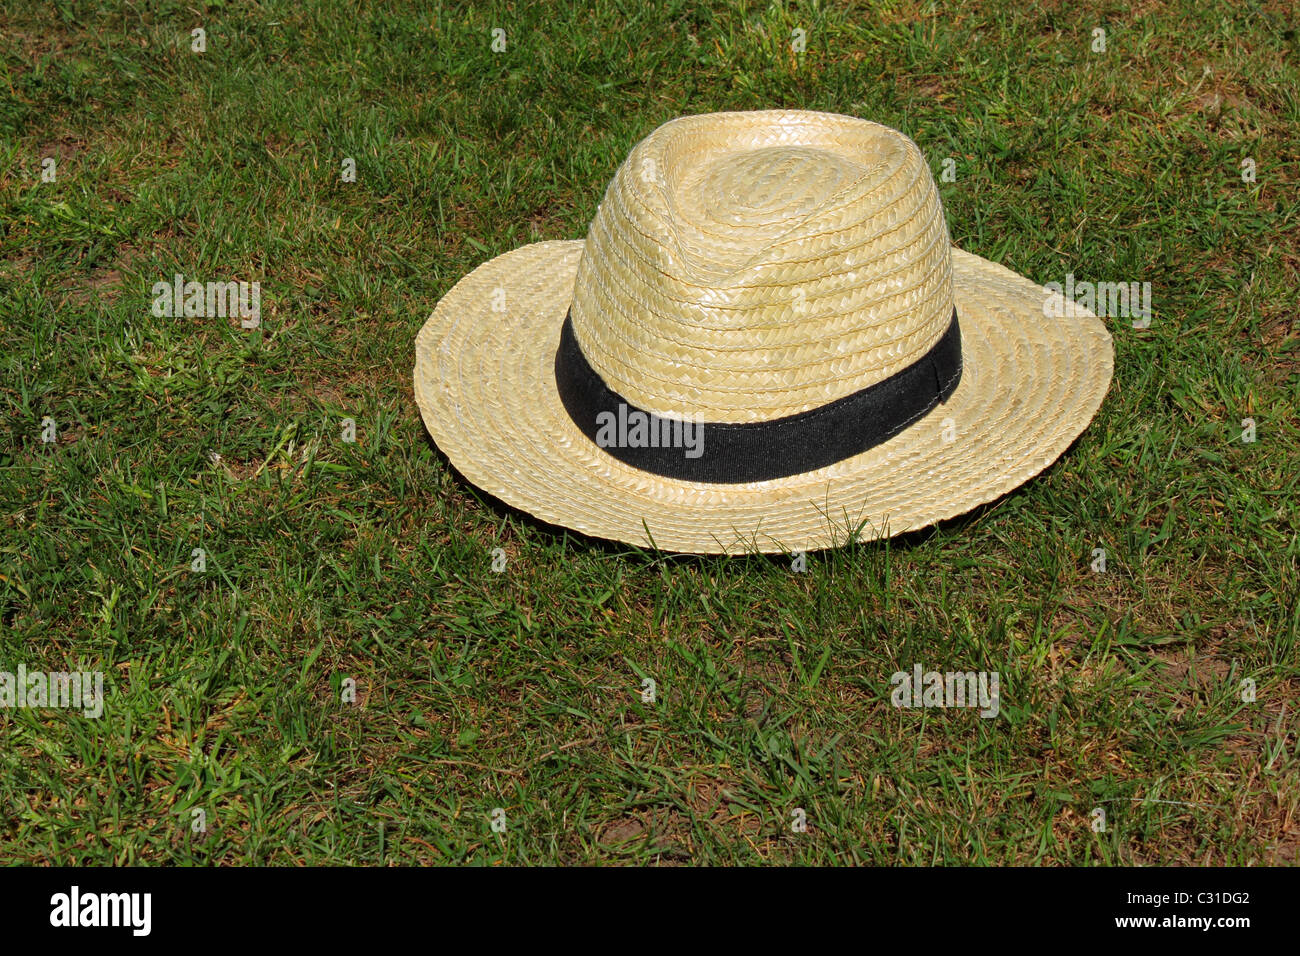 Un sombrero tipo Fedora sobre hierba Foto de stock